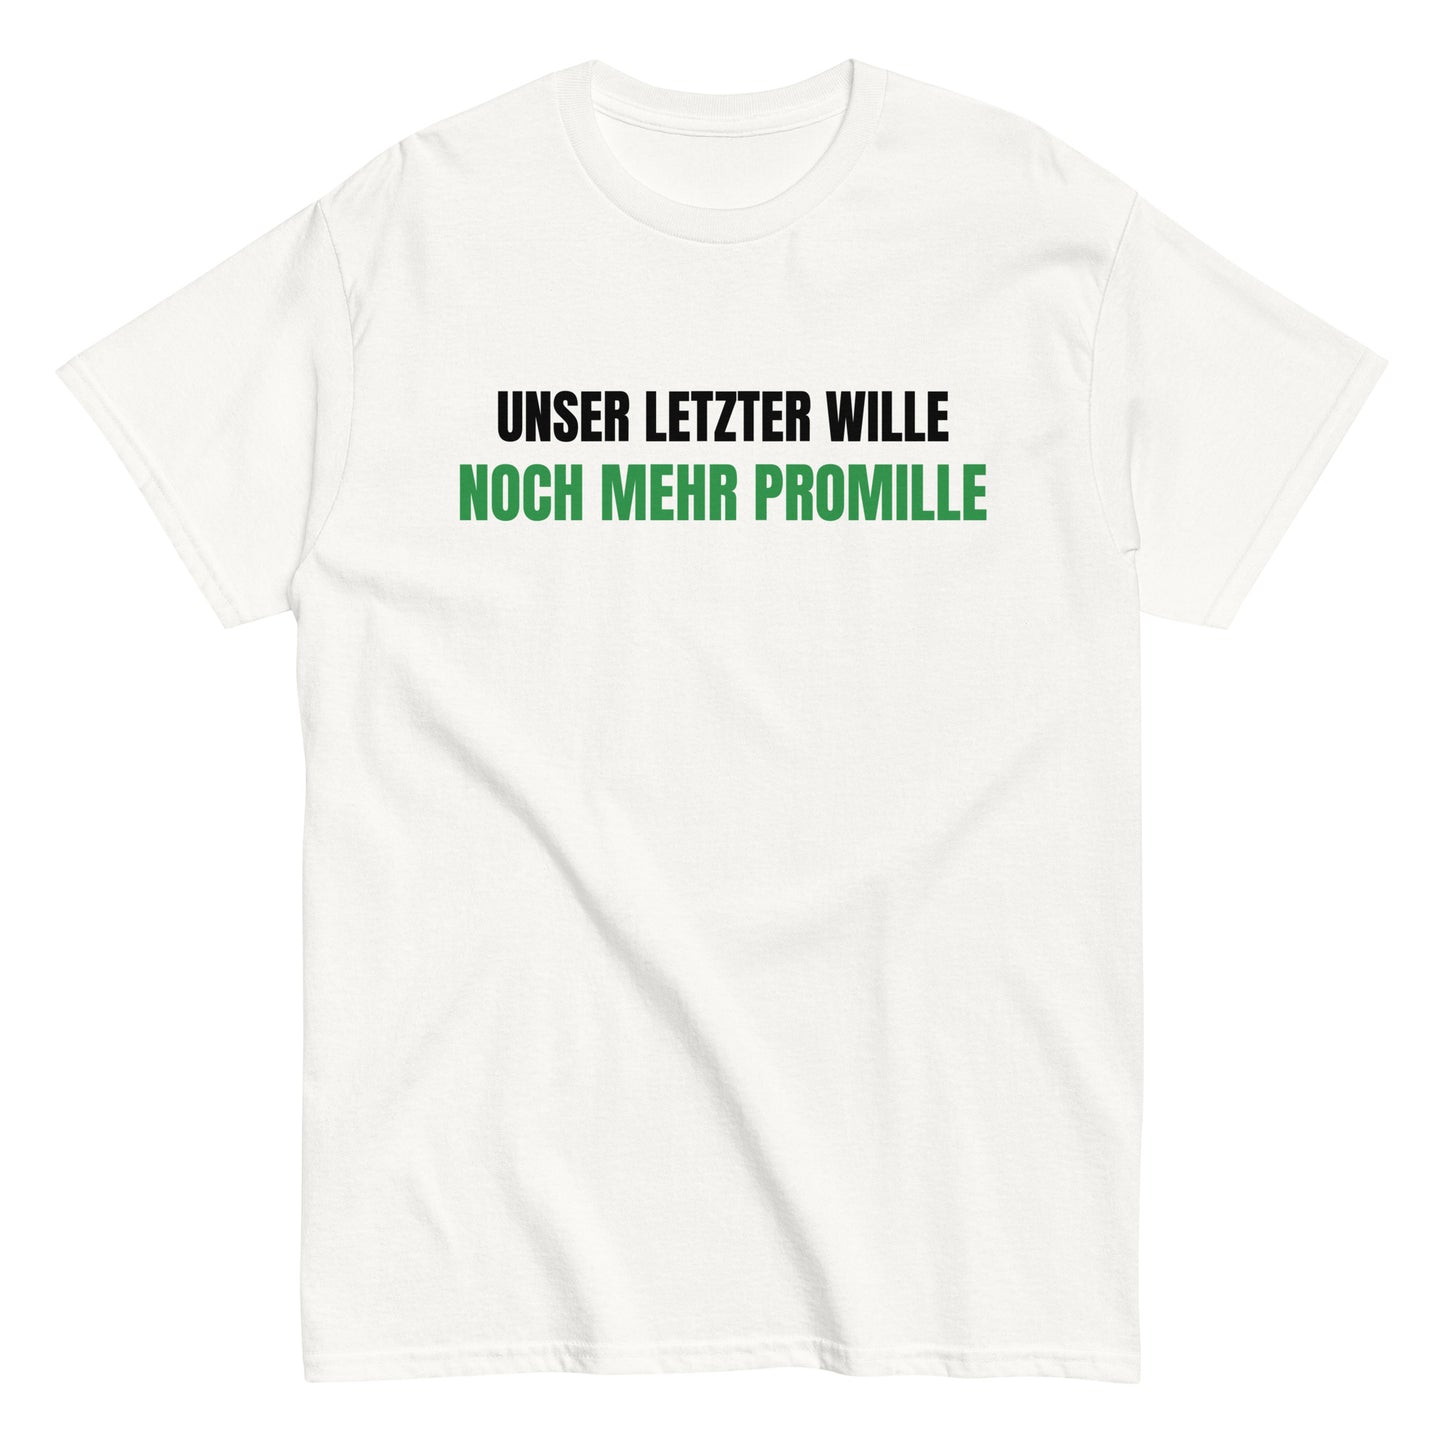 UNSER LETZTER WILLE - NOCH MEHR PROMILLE T-Shirt